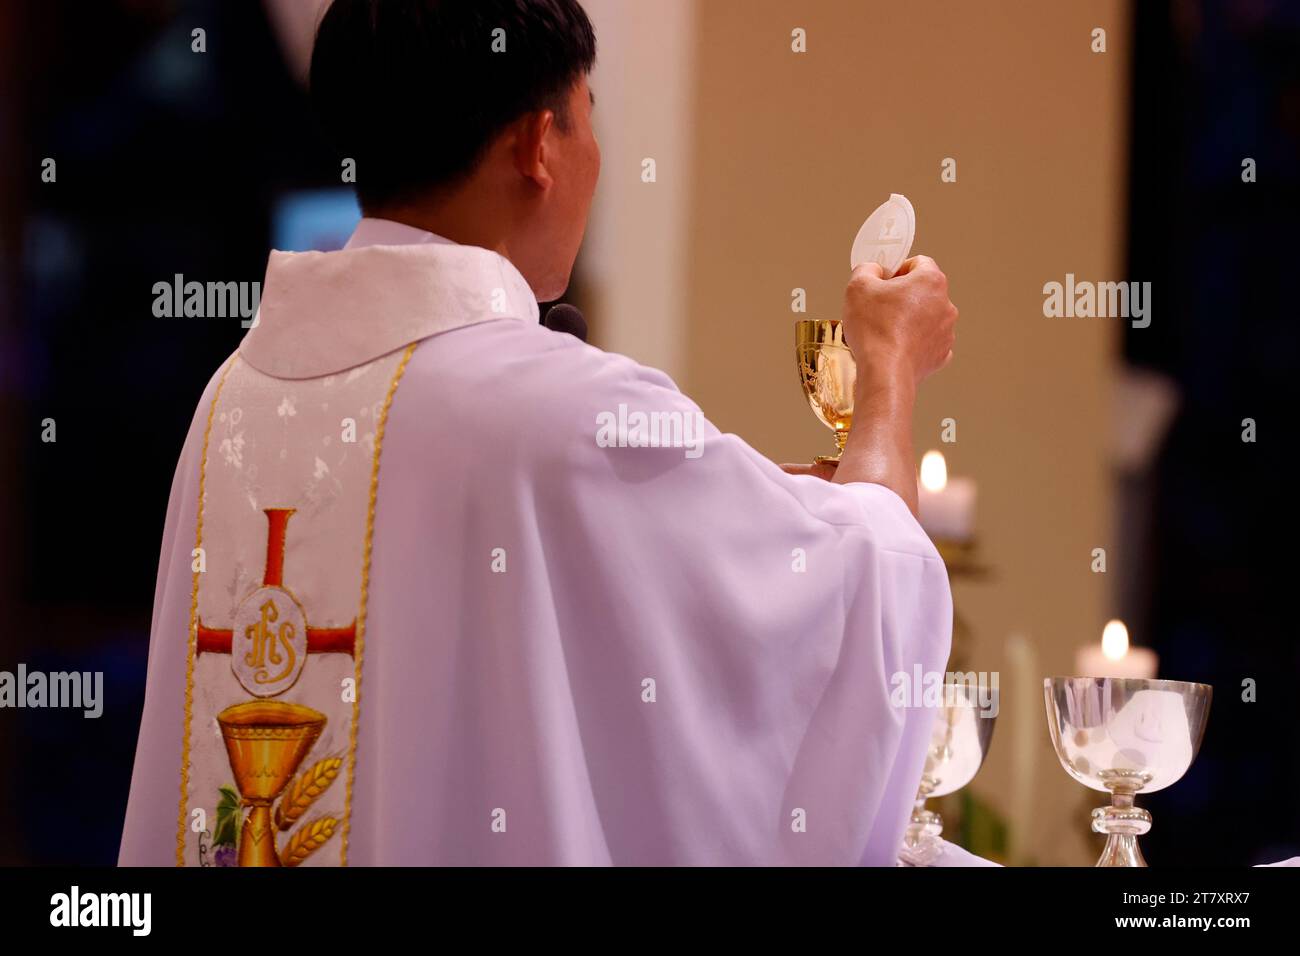 Vue arrière du prêtre avec chasuble à la célébration Eucharistie, la messe du dimanche, l'élévation de l'hôte, St. Cathédrale Nicolas, Dalat, Vietnam, Indochine Banque D'Images